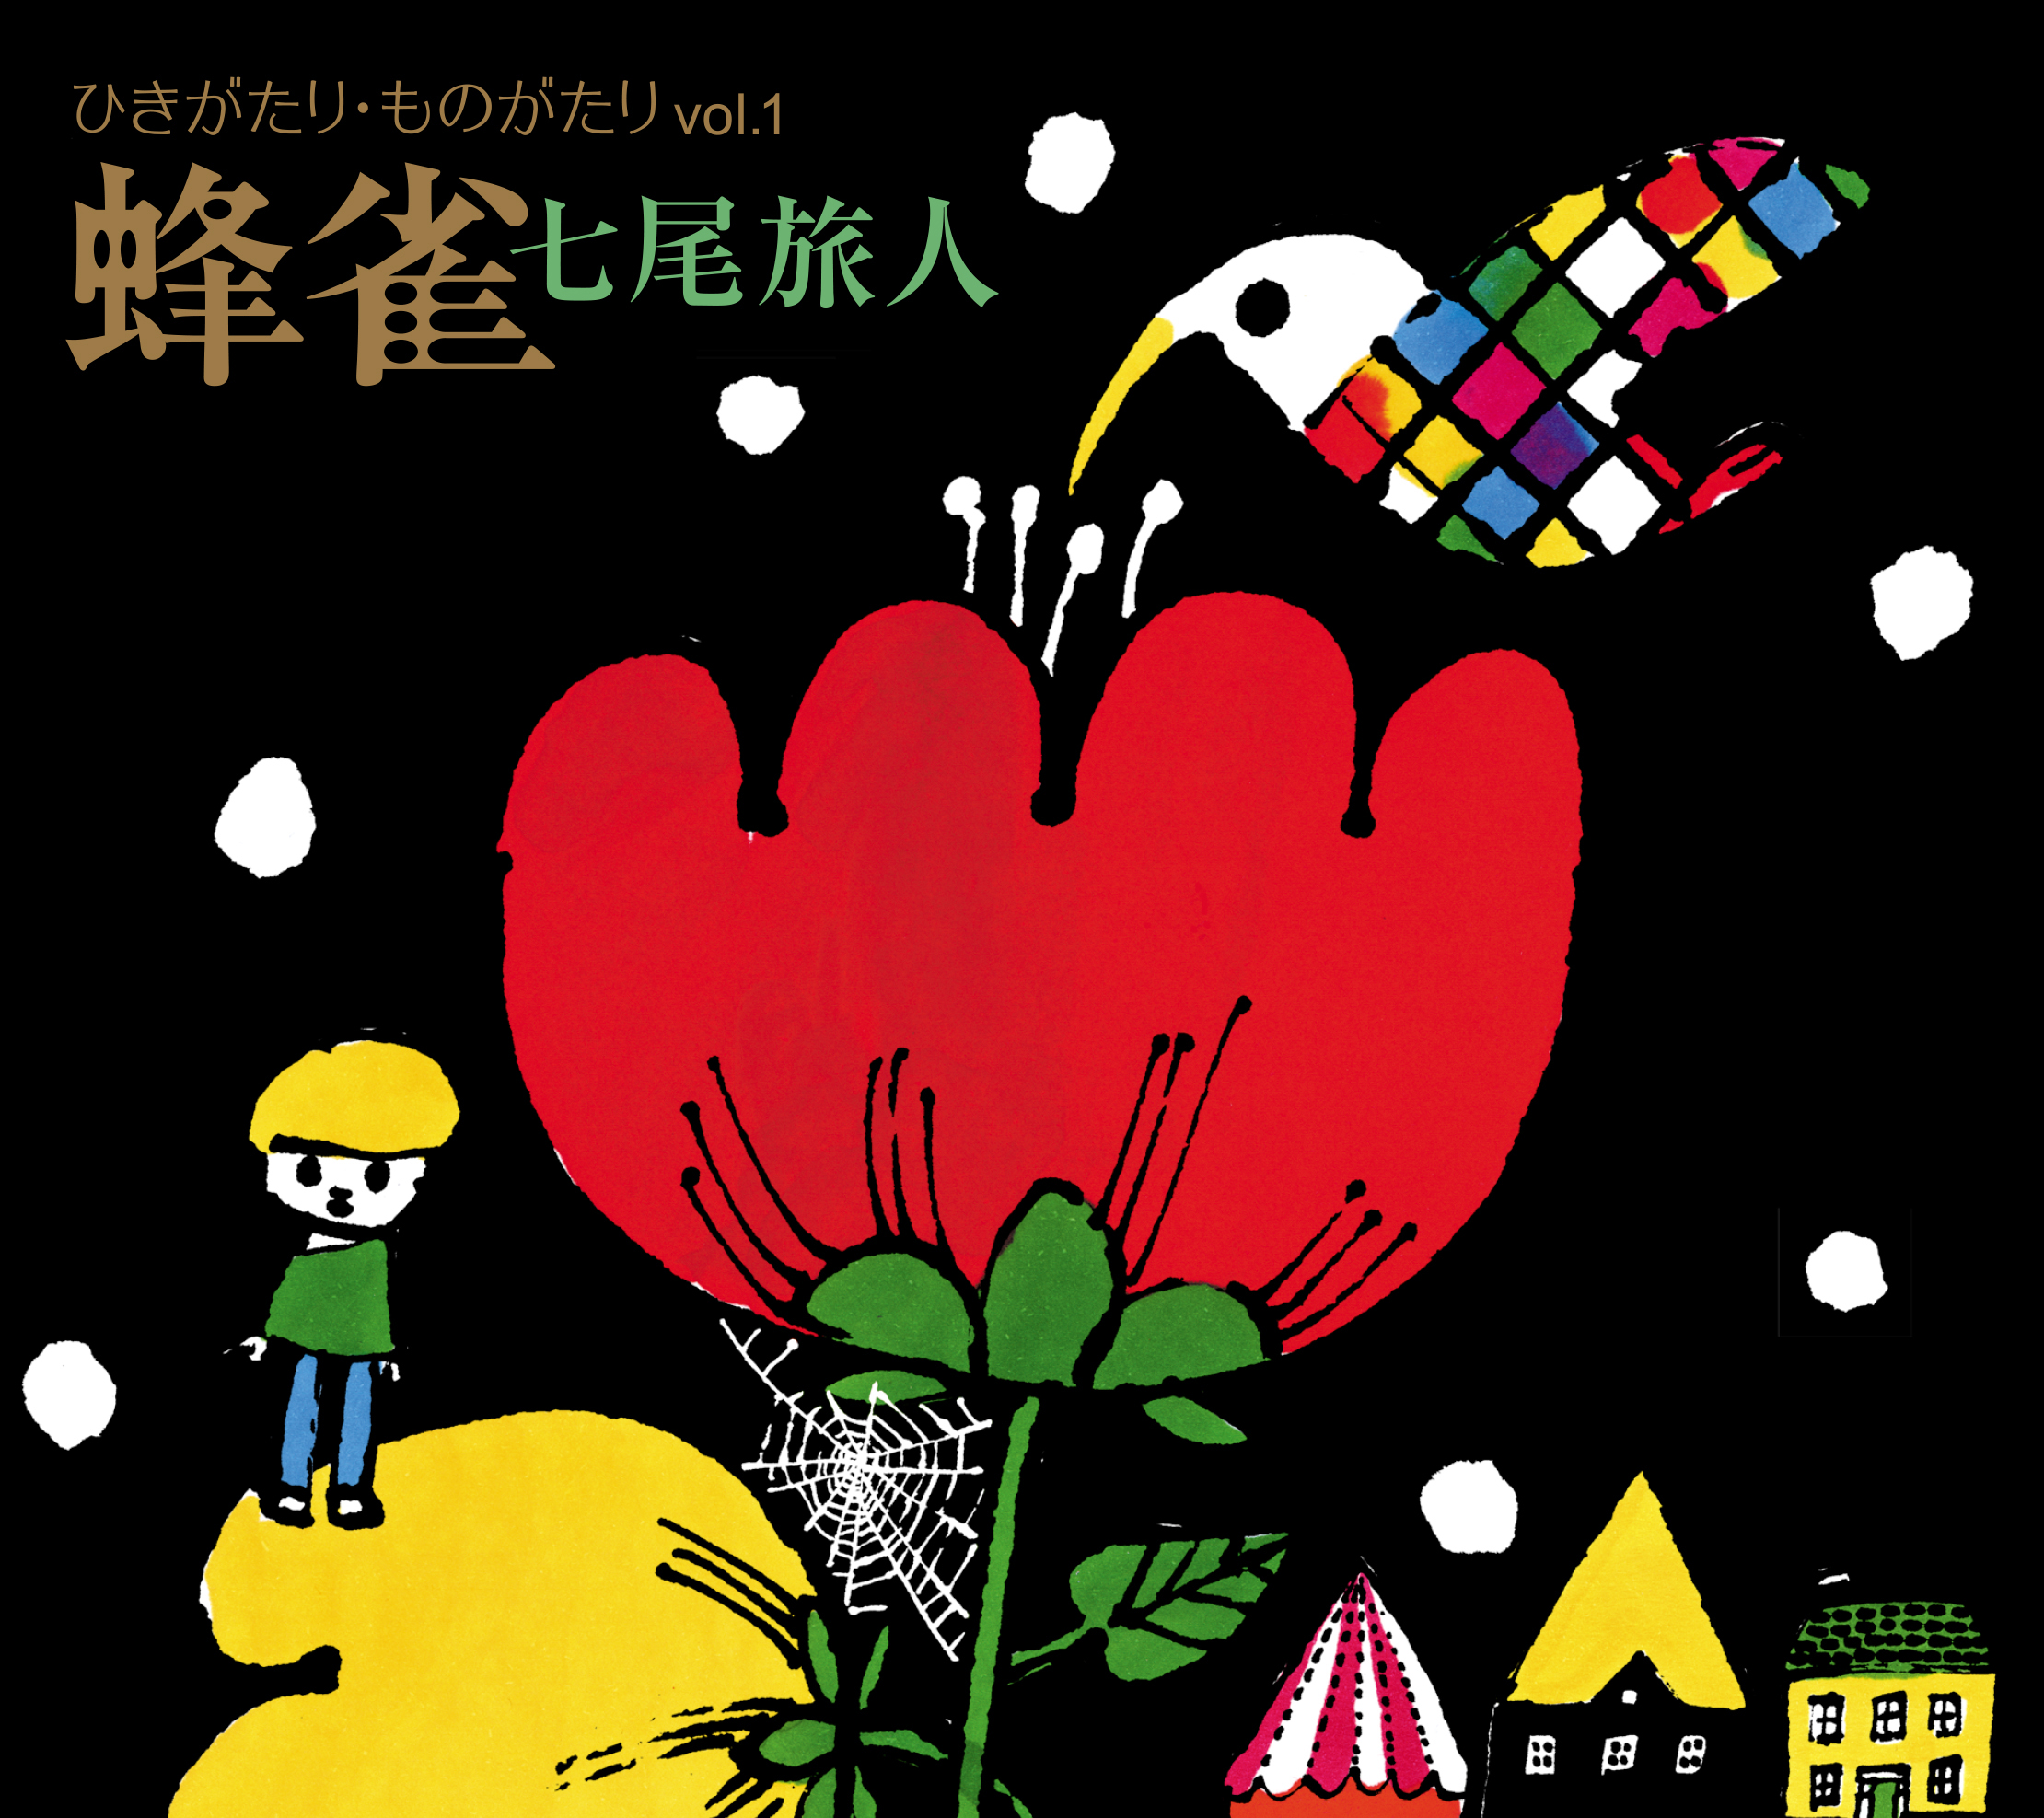 七尾旅人がデビュー・アルバム『雨に撃たえば! disc2』から3枚組 